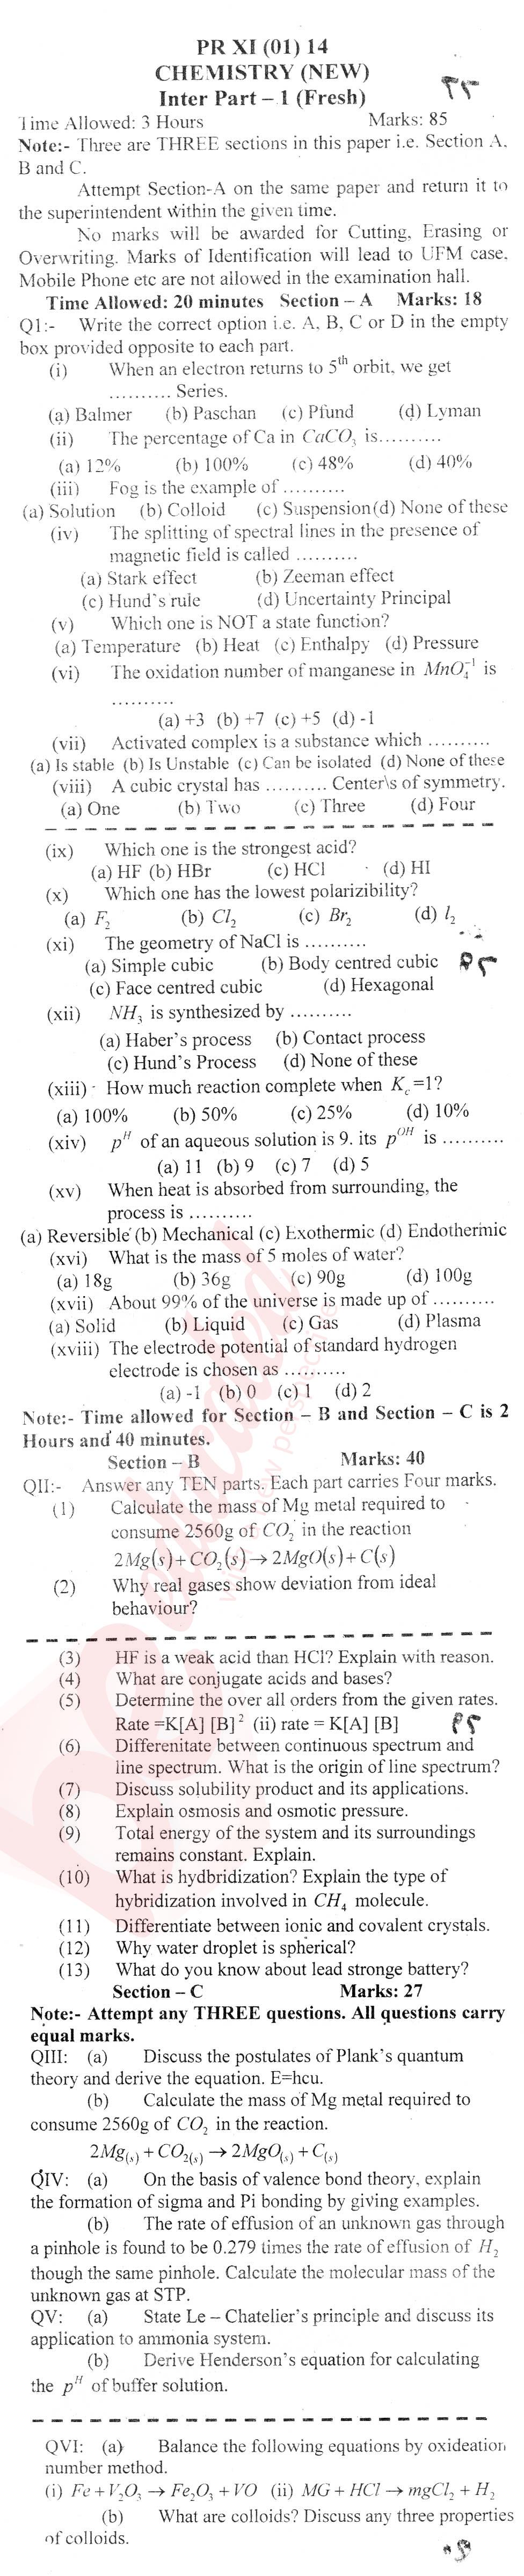 Chemistry FSC Part 1 Past Paper Group 1 BISE Mardan 2014